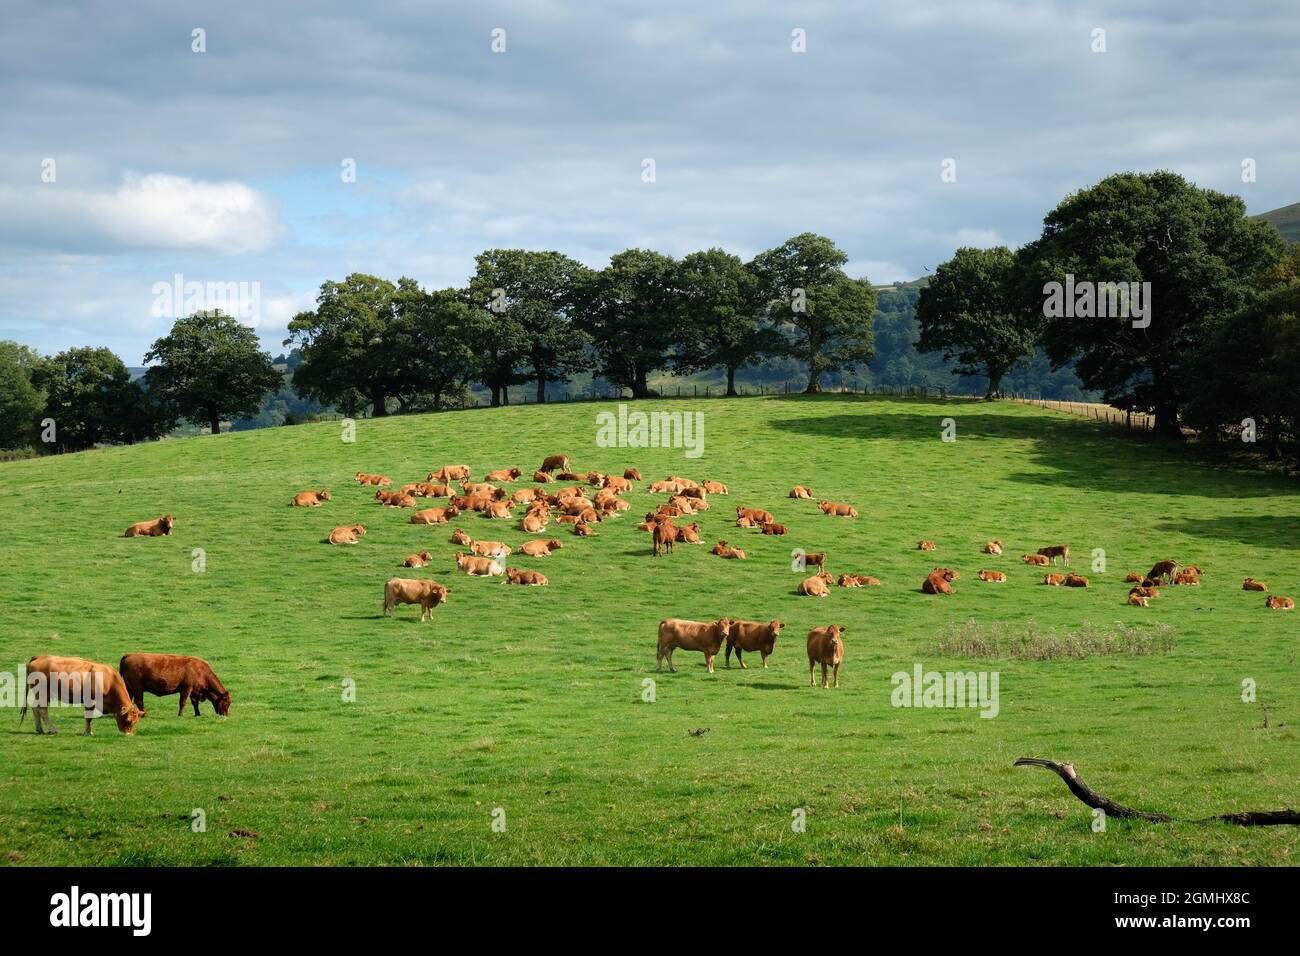 Un troupeau de bovins de boucherie Limousin - vaches avec veaux - sur les terres agricoles près de Builth Wells, Powys, pays de Galles, Royaume-Uni Banque D'Images